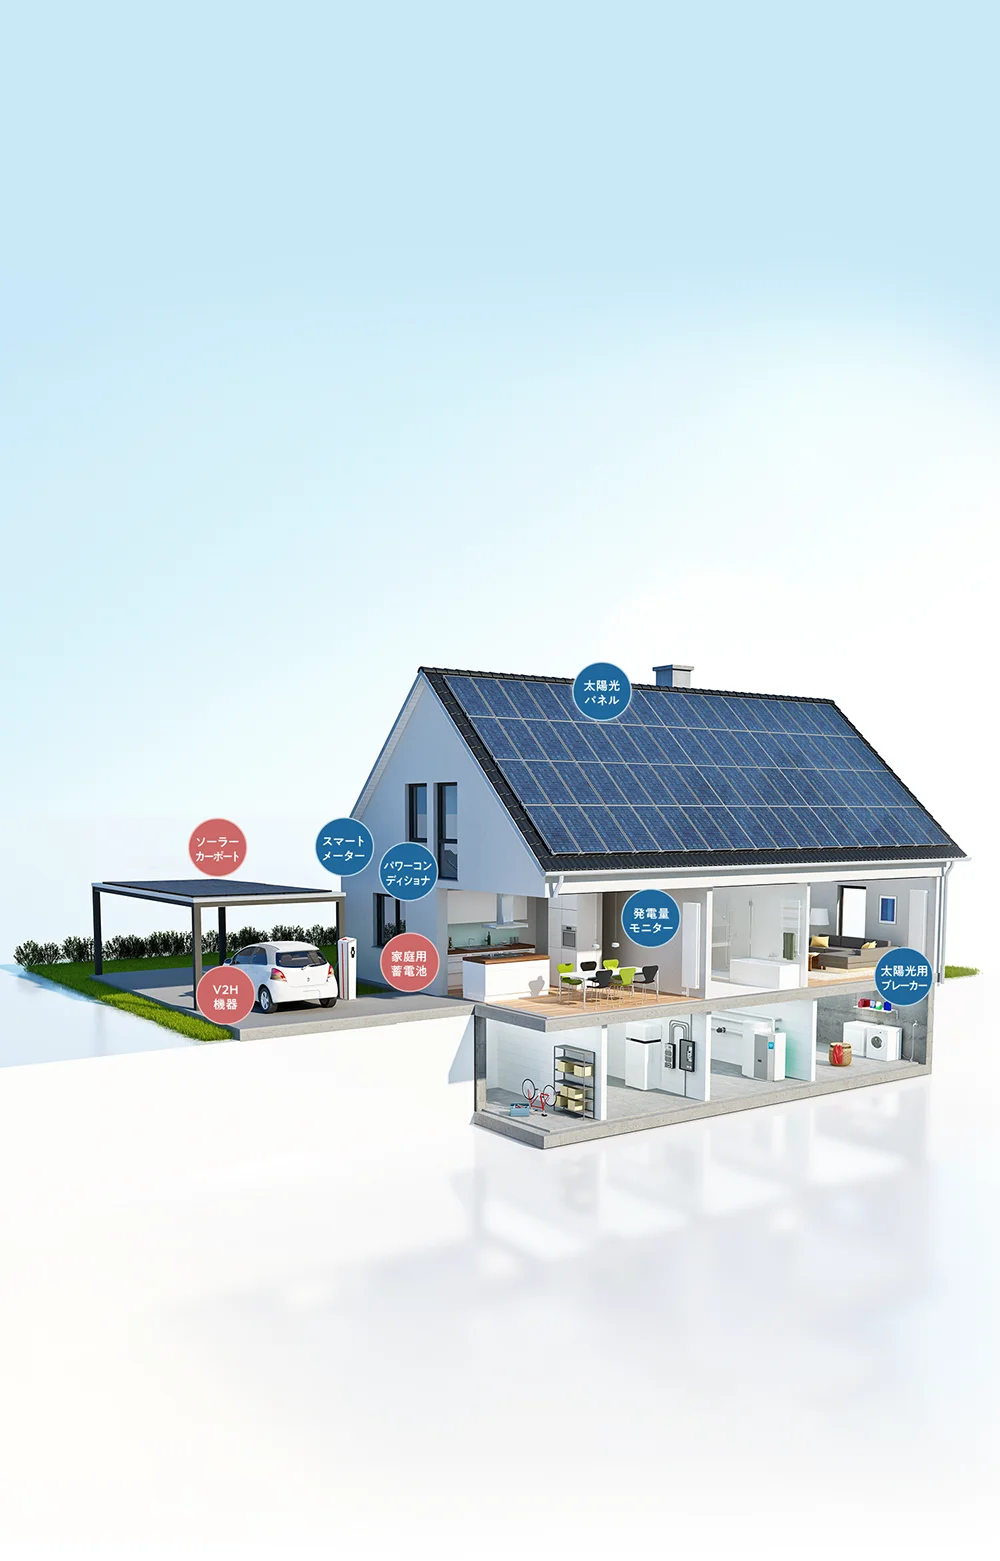 設備について-太陽光発電設備は様々な機器で構成されています。